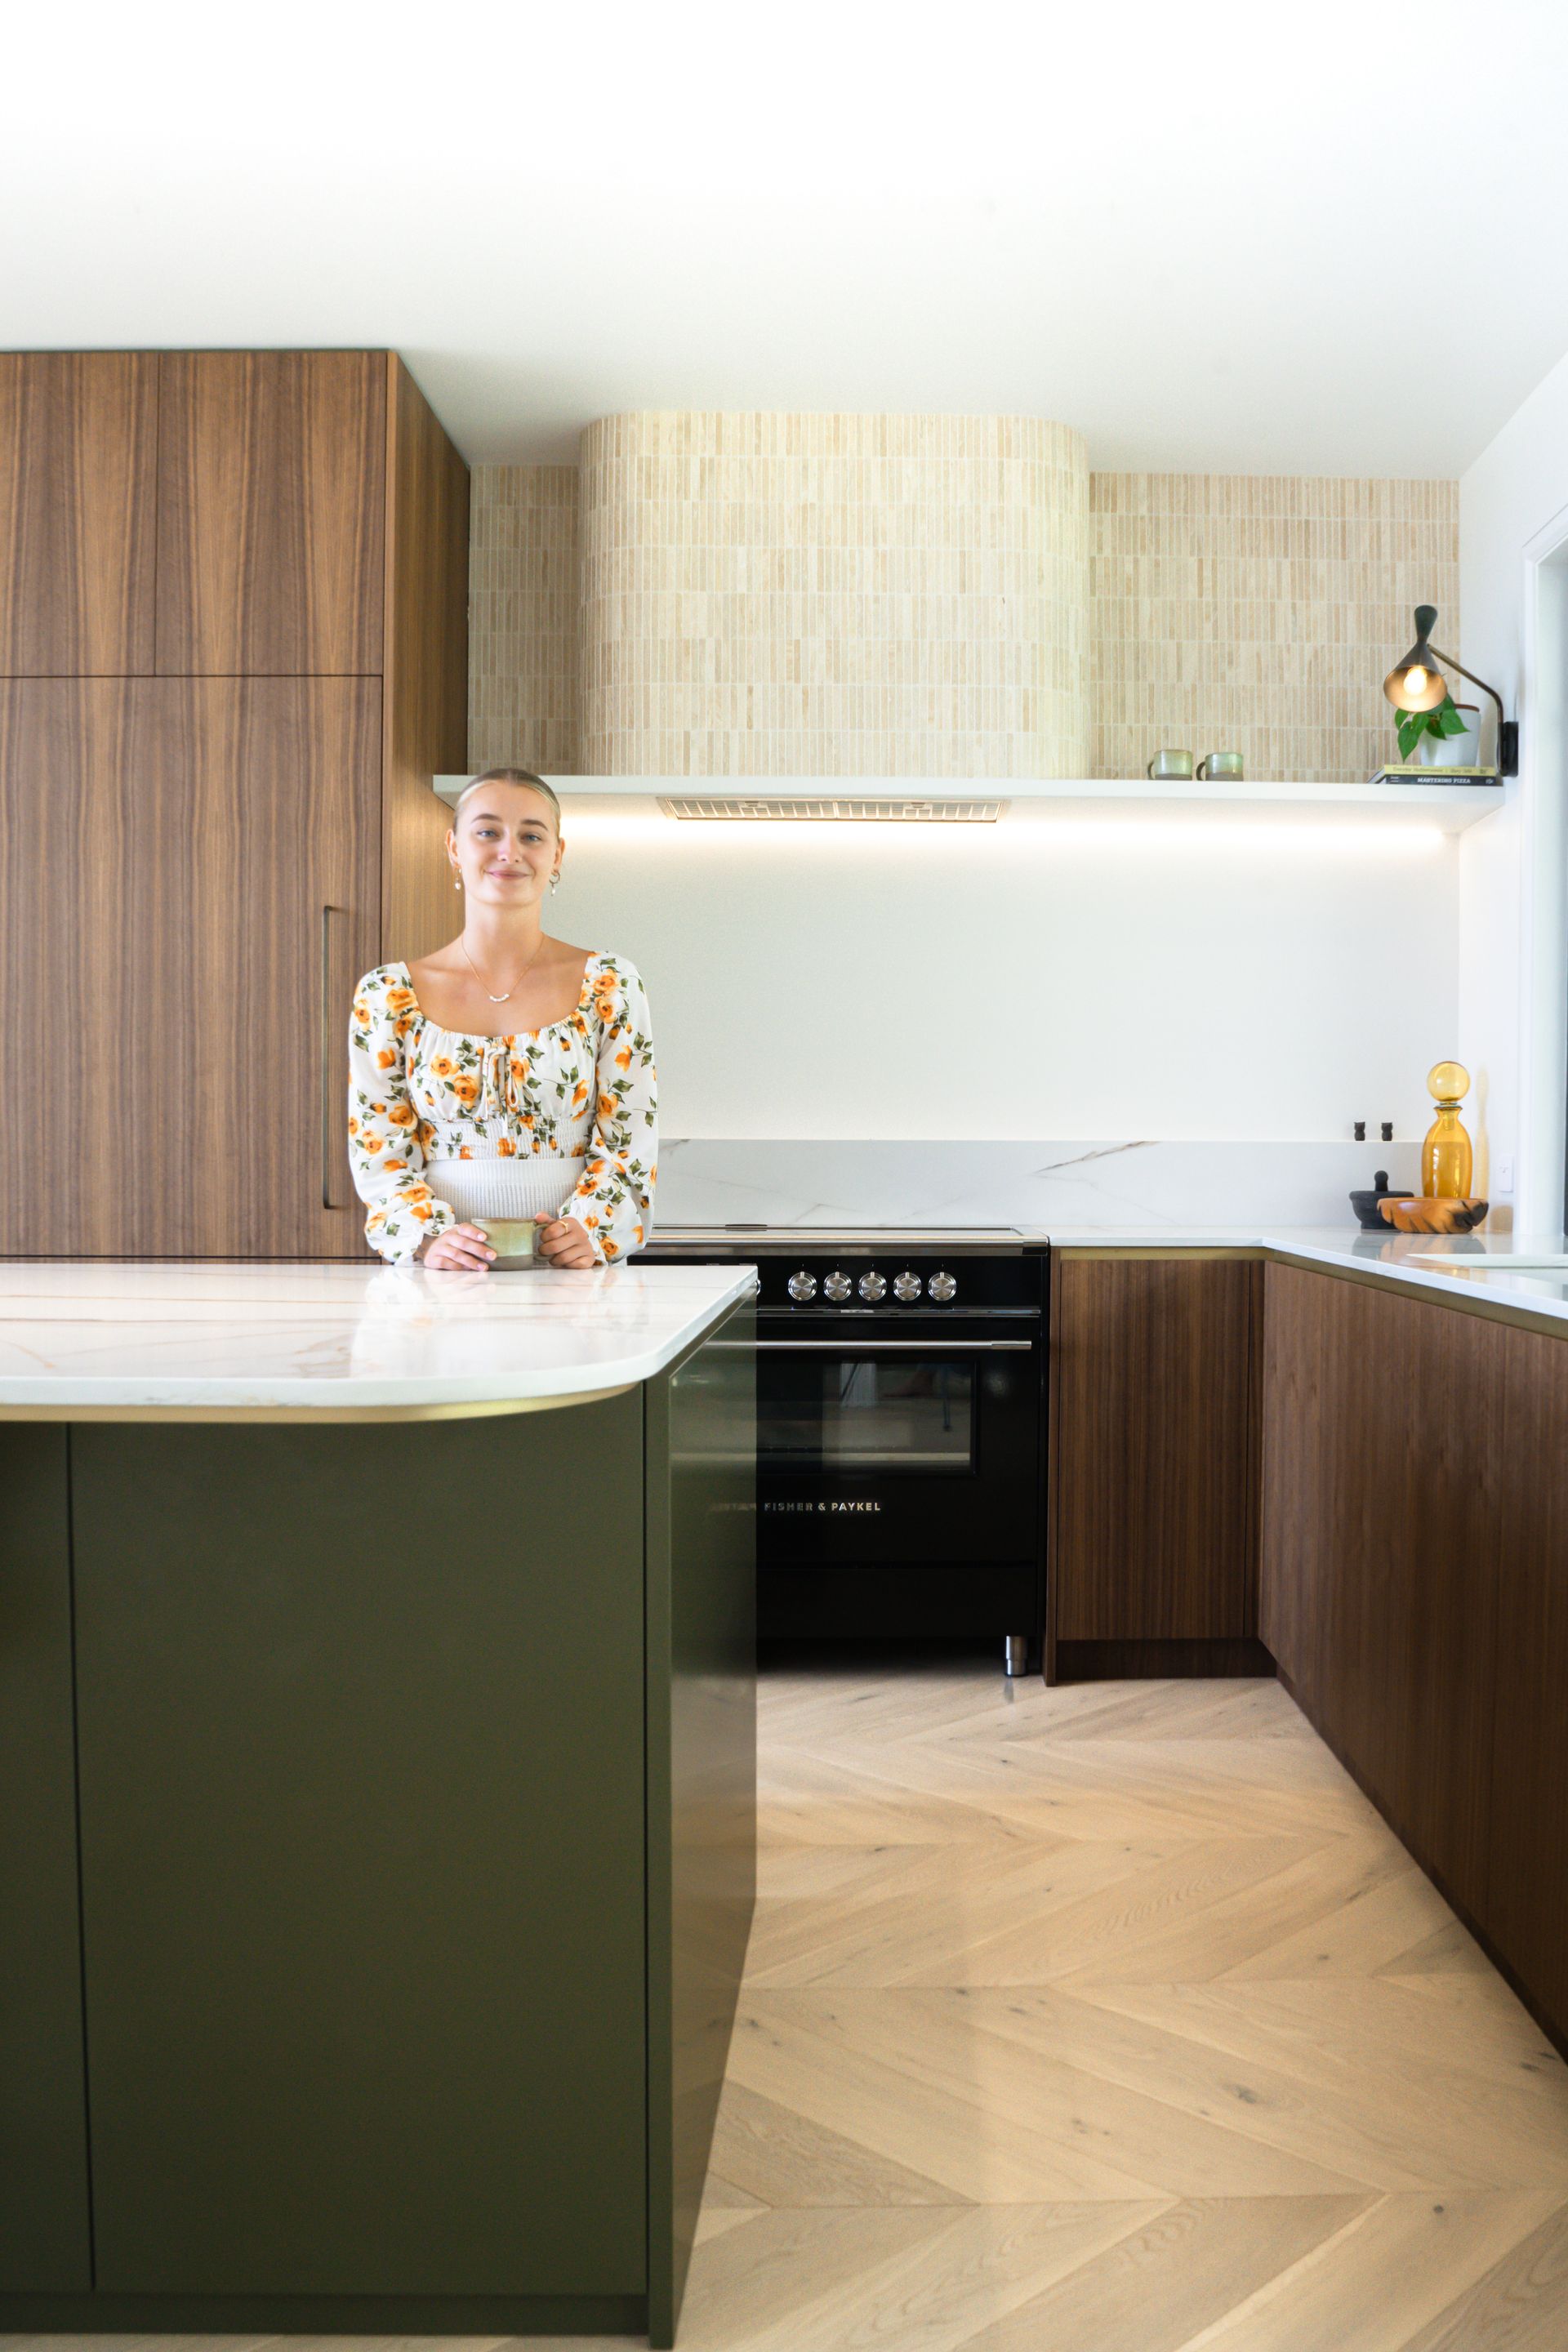 Mid Century modern kitchen design by our Vista Kitchens dream kitchen team